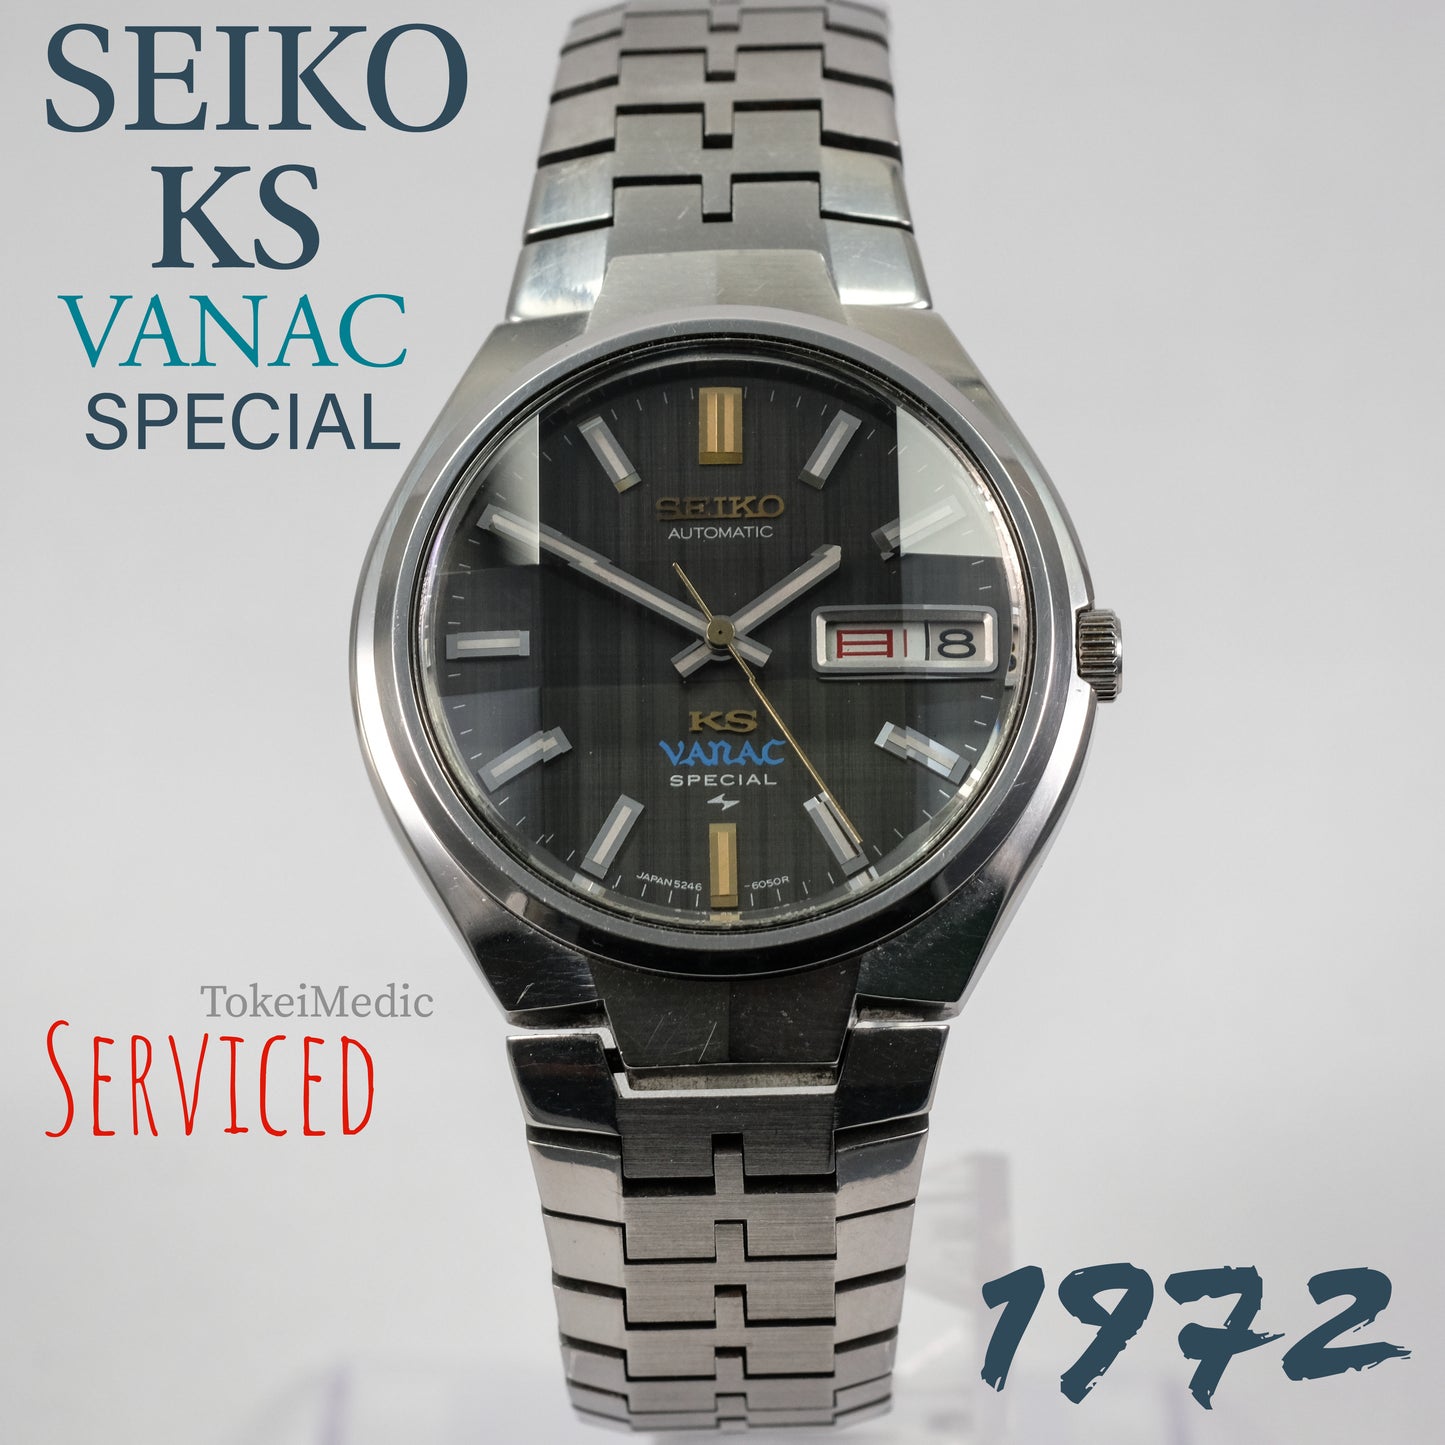 RESERVED! 1972 Seiko KS Vanac Special 5246-6040